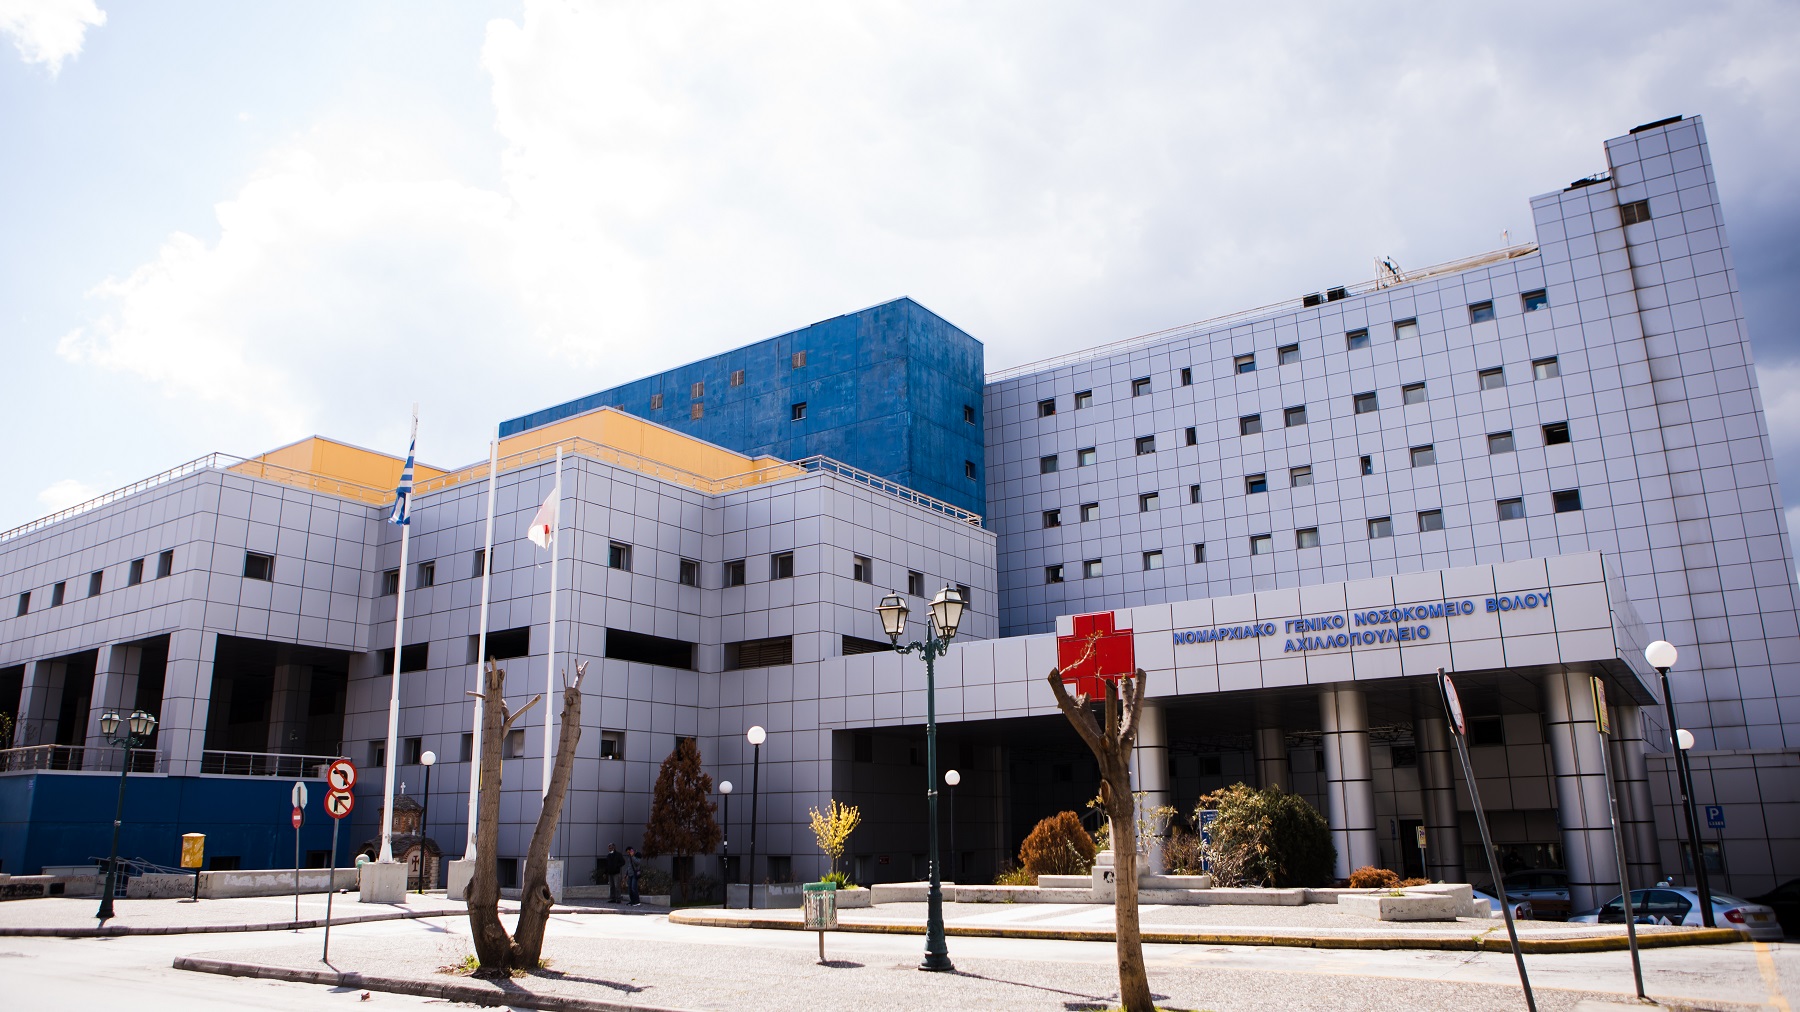 Ομιλος ΗΡΑΚΛΗΣ: Διαμορφώνει το Αιμοδυναμικό Εργαστήριο στο Αχιλλοπούλειο Γ.Ν Βόλου